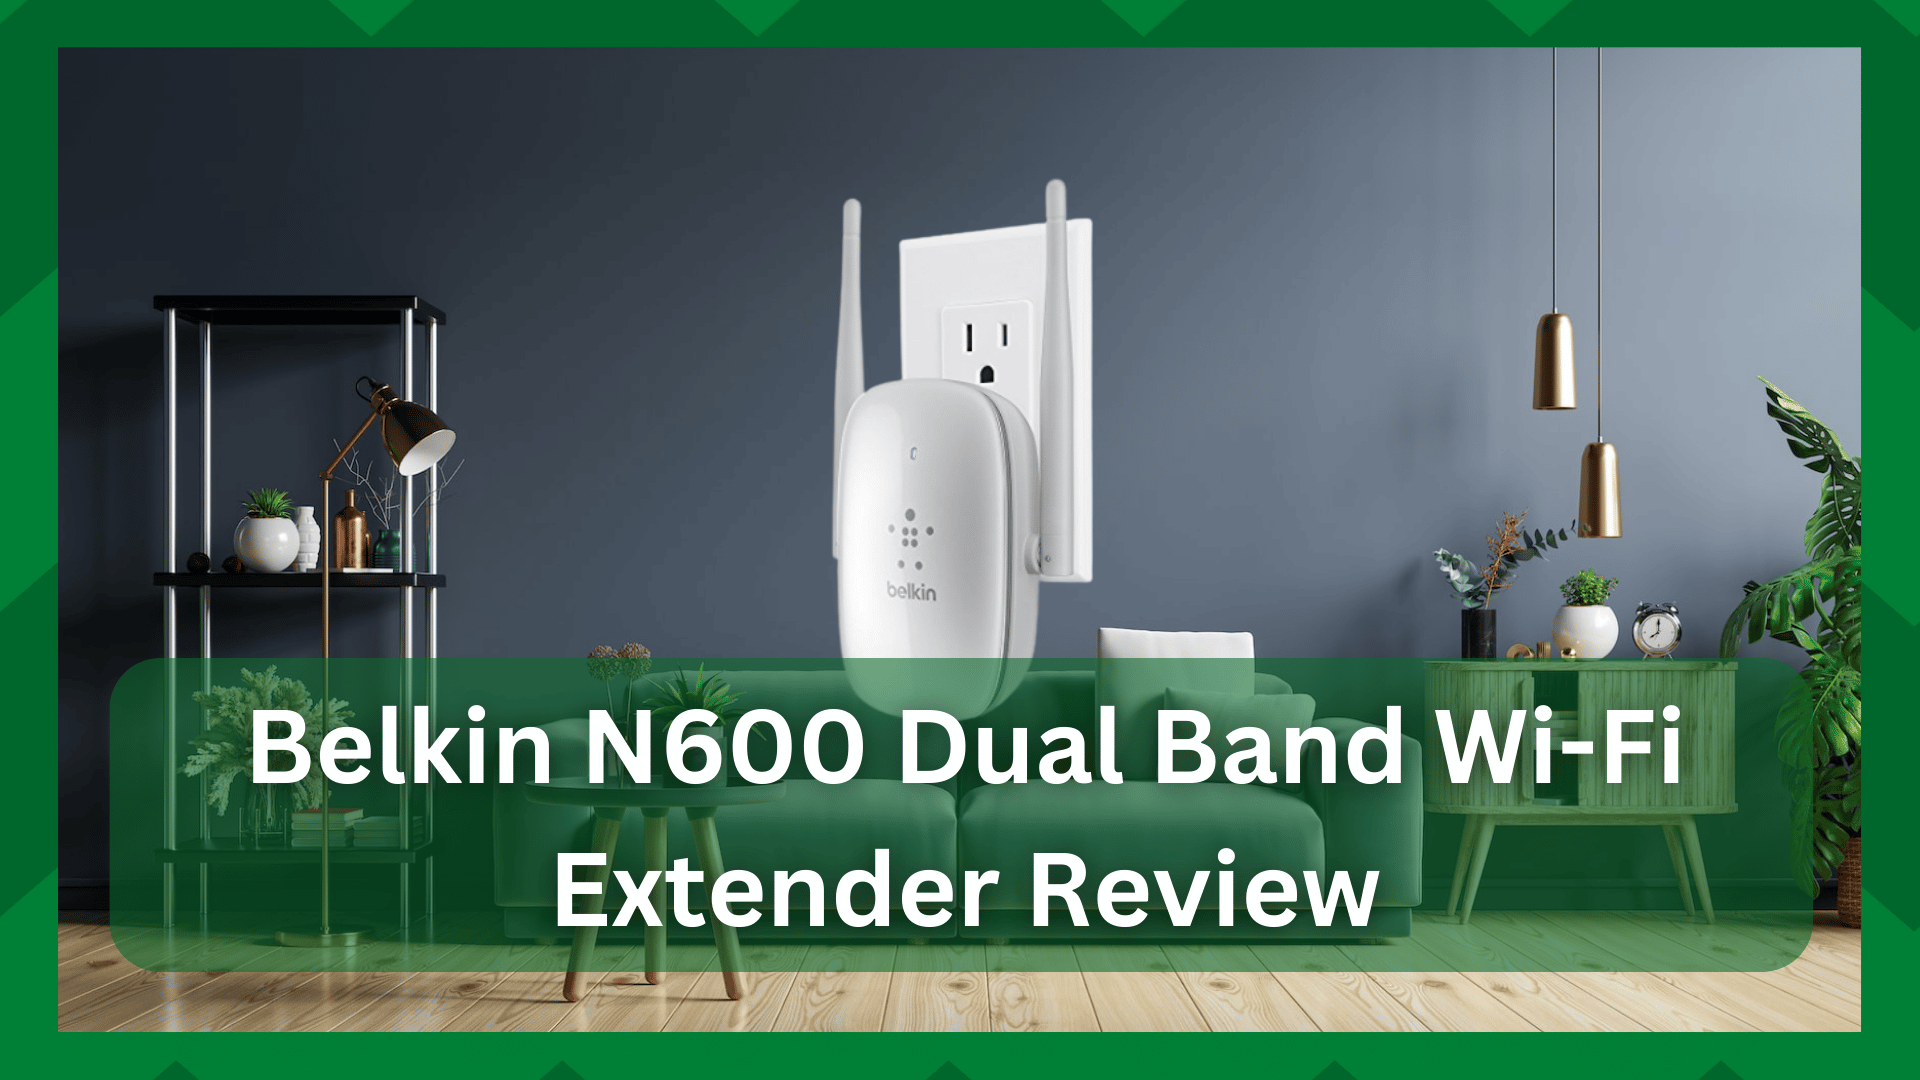 belkin n600 dual band wifi range extender review